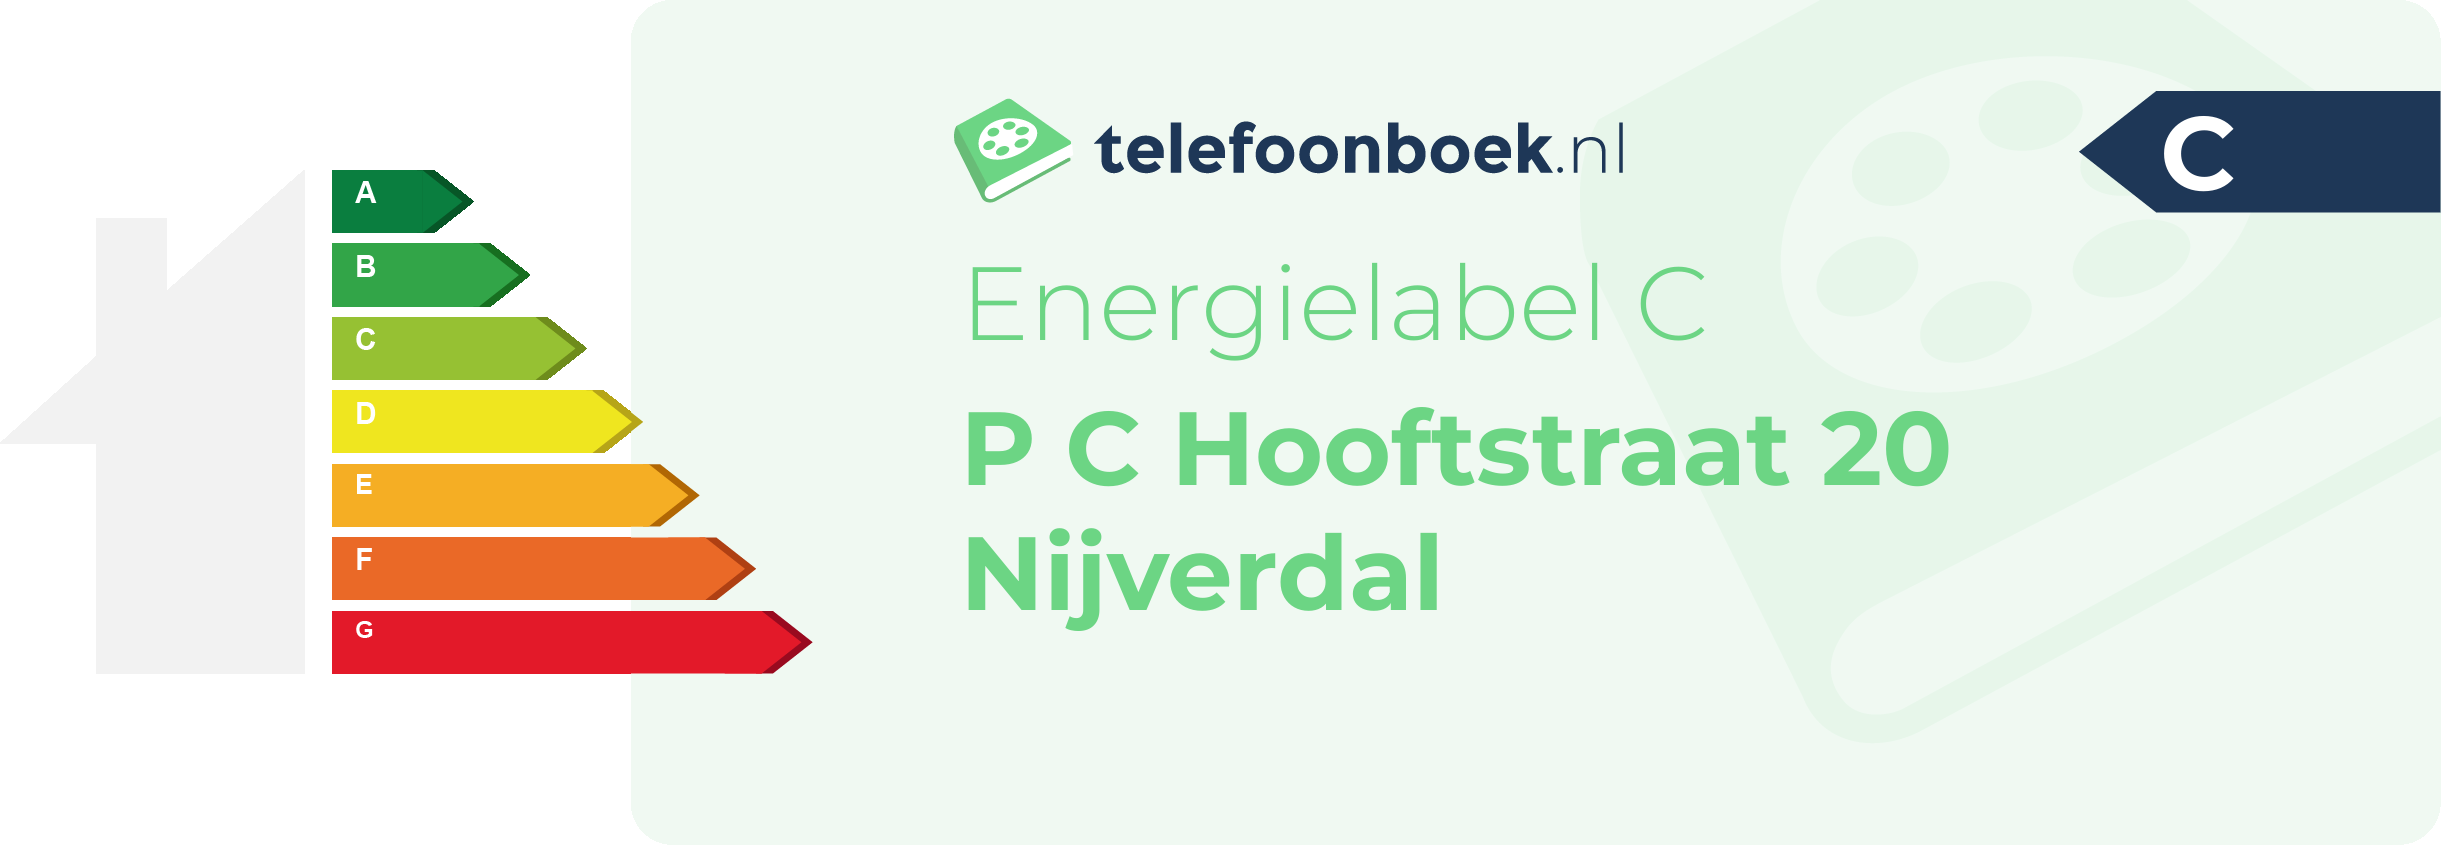 Energielabel P C Hooftstraat 20 Nijverdal